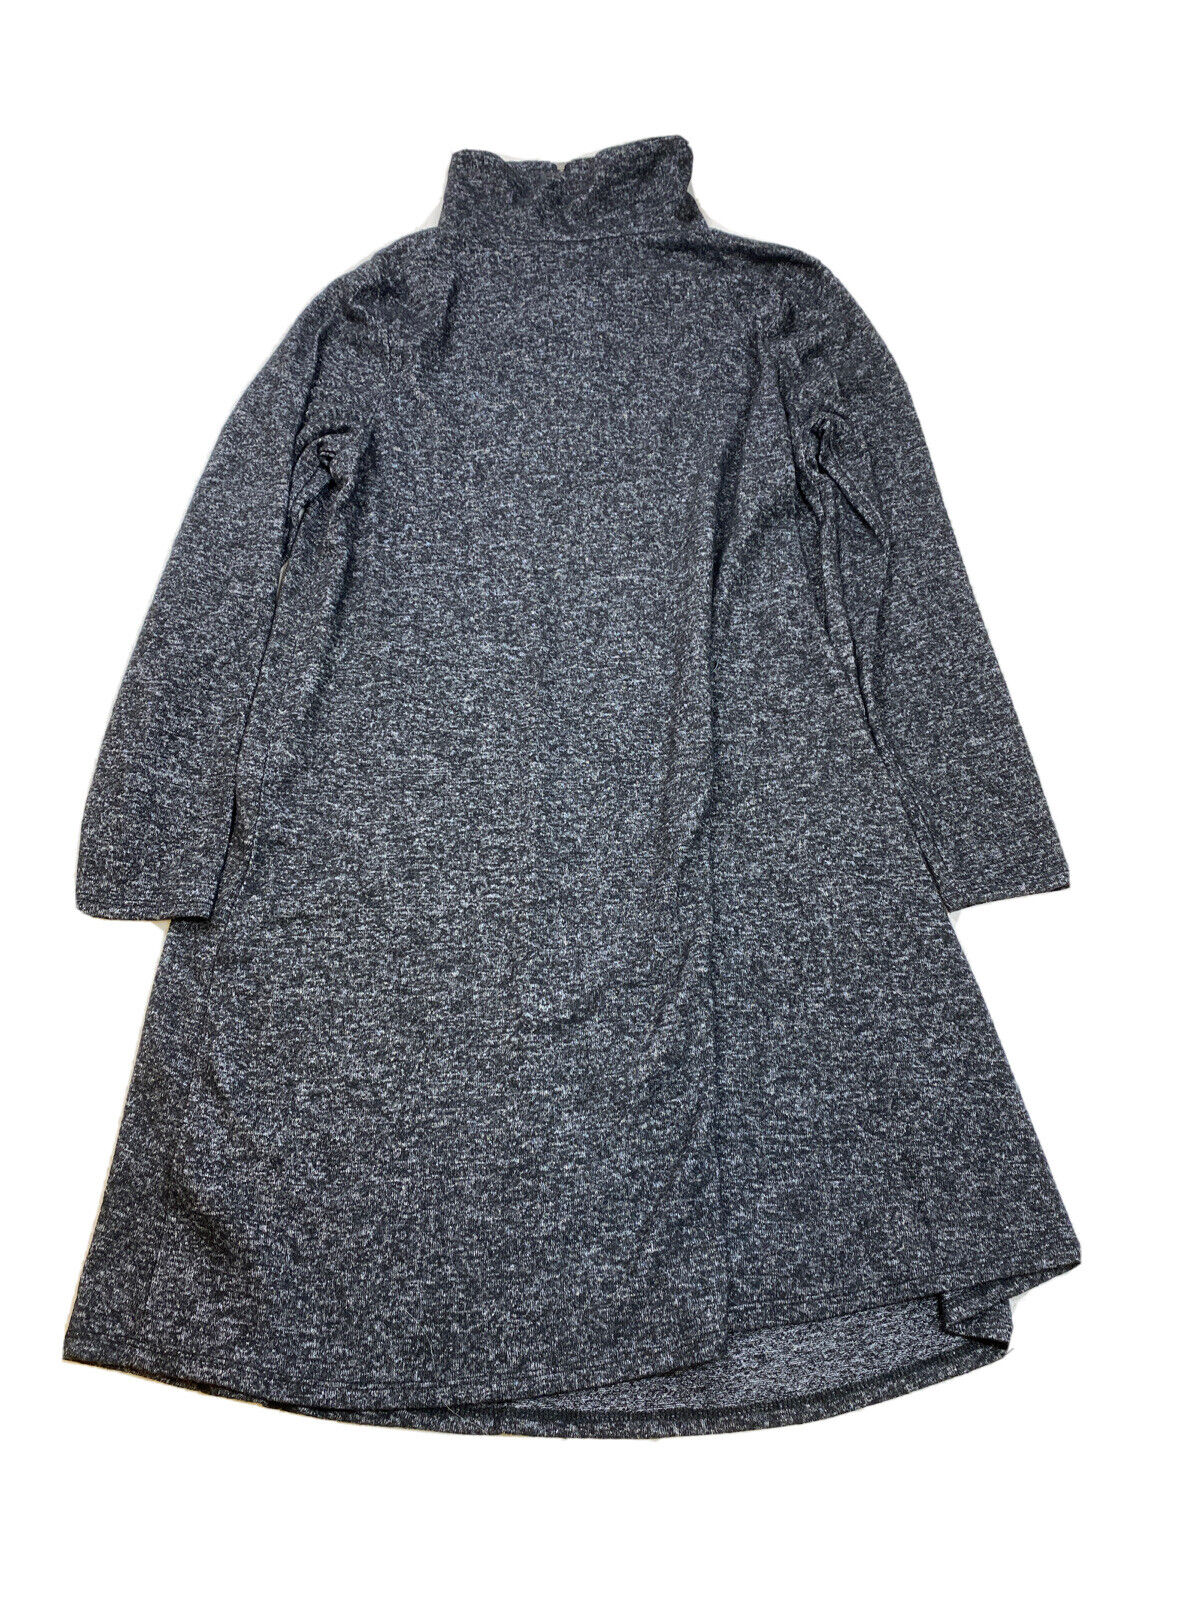 NUEVO Ab Studio Vestido tipo suéter negro de manga larga con cremallera de 1/4 para mujer - M